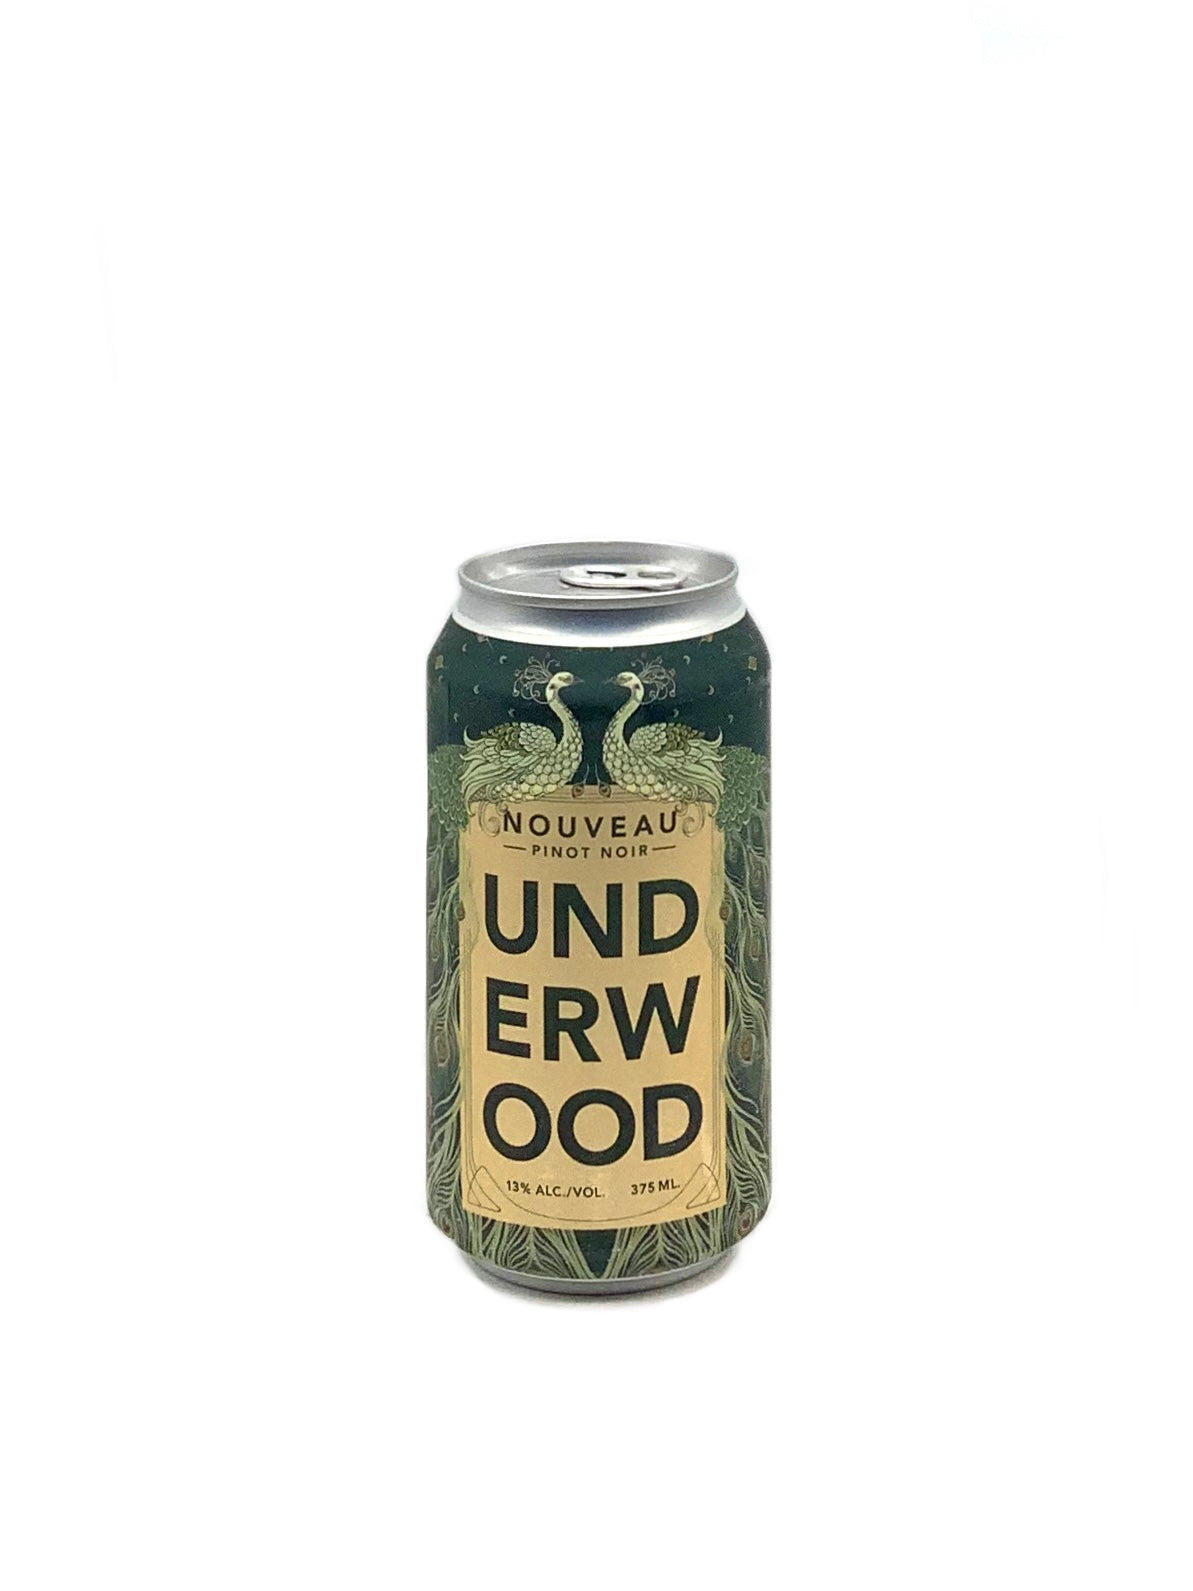 Underwood, Pinot Noir "Nouveau" Can 375ml vegan